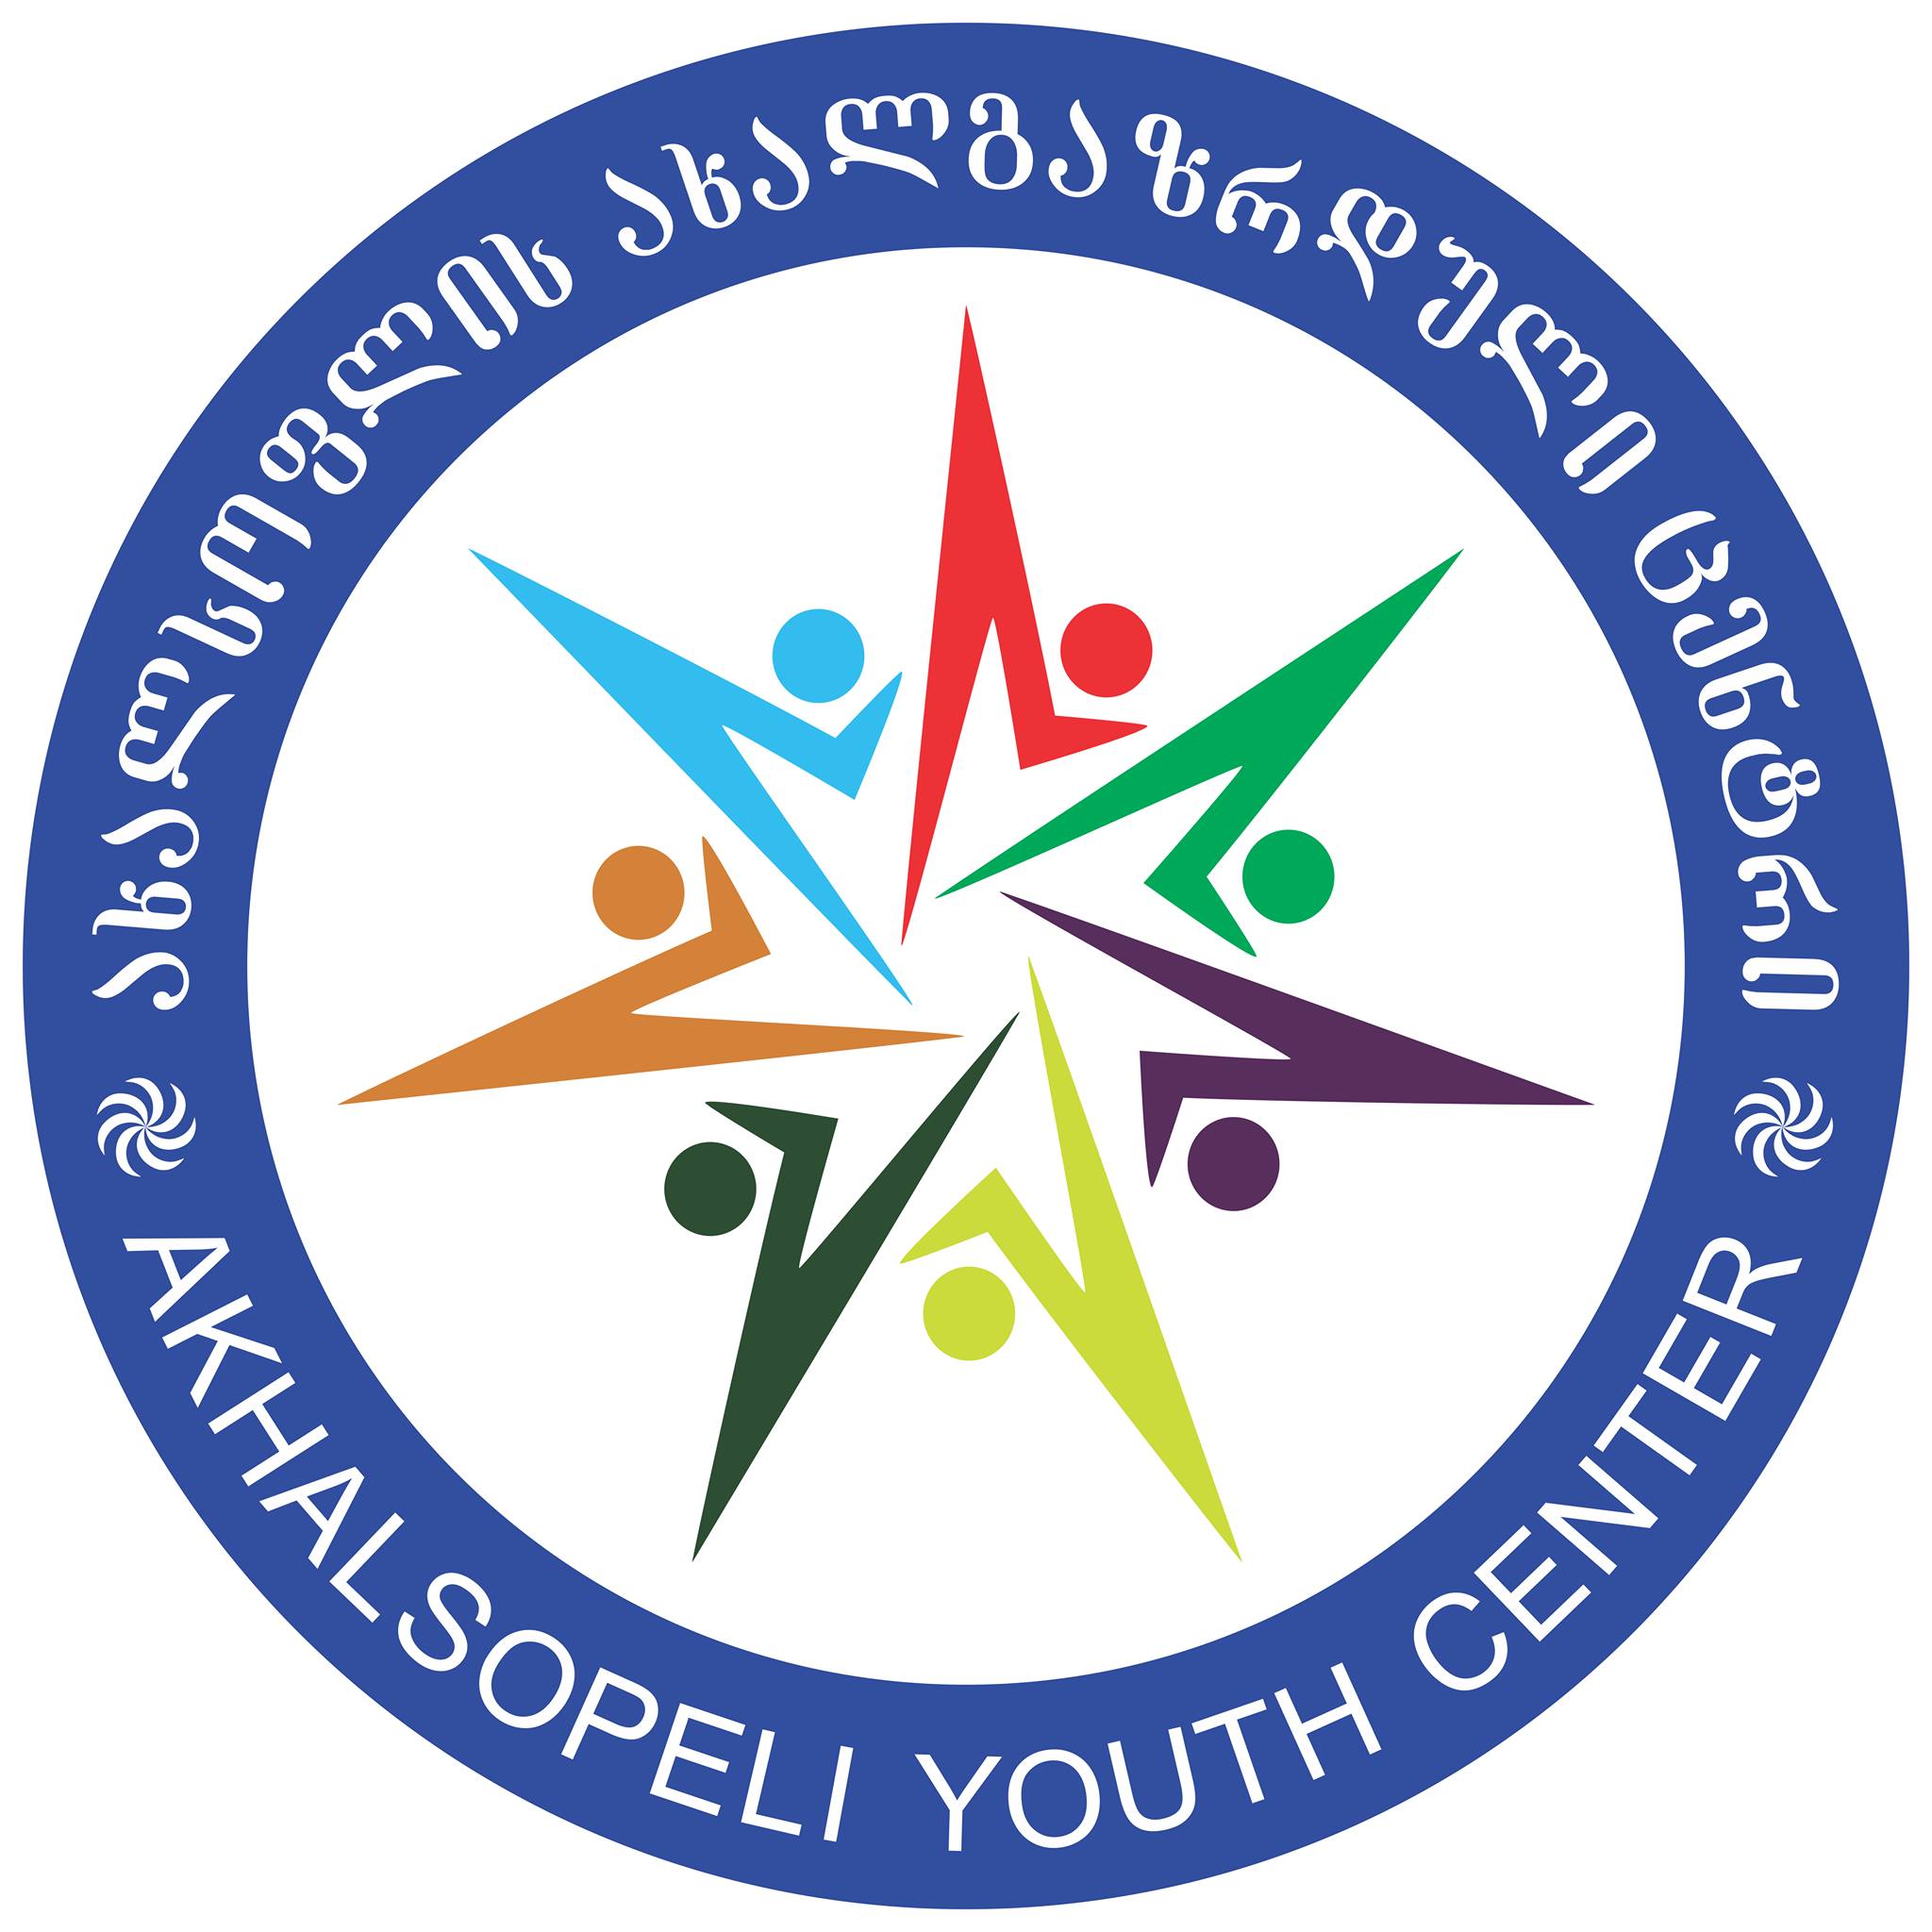 Akhalsopeli Youth Center